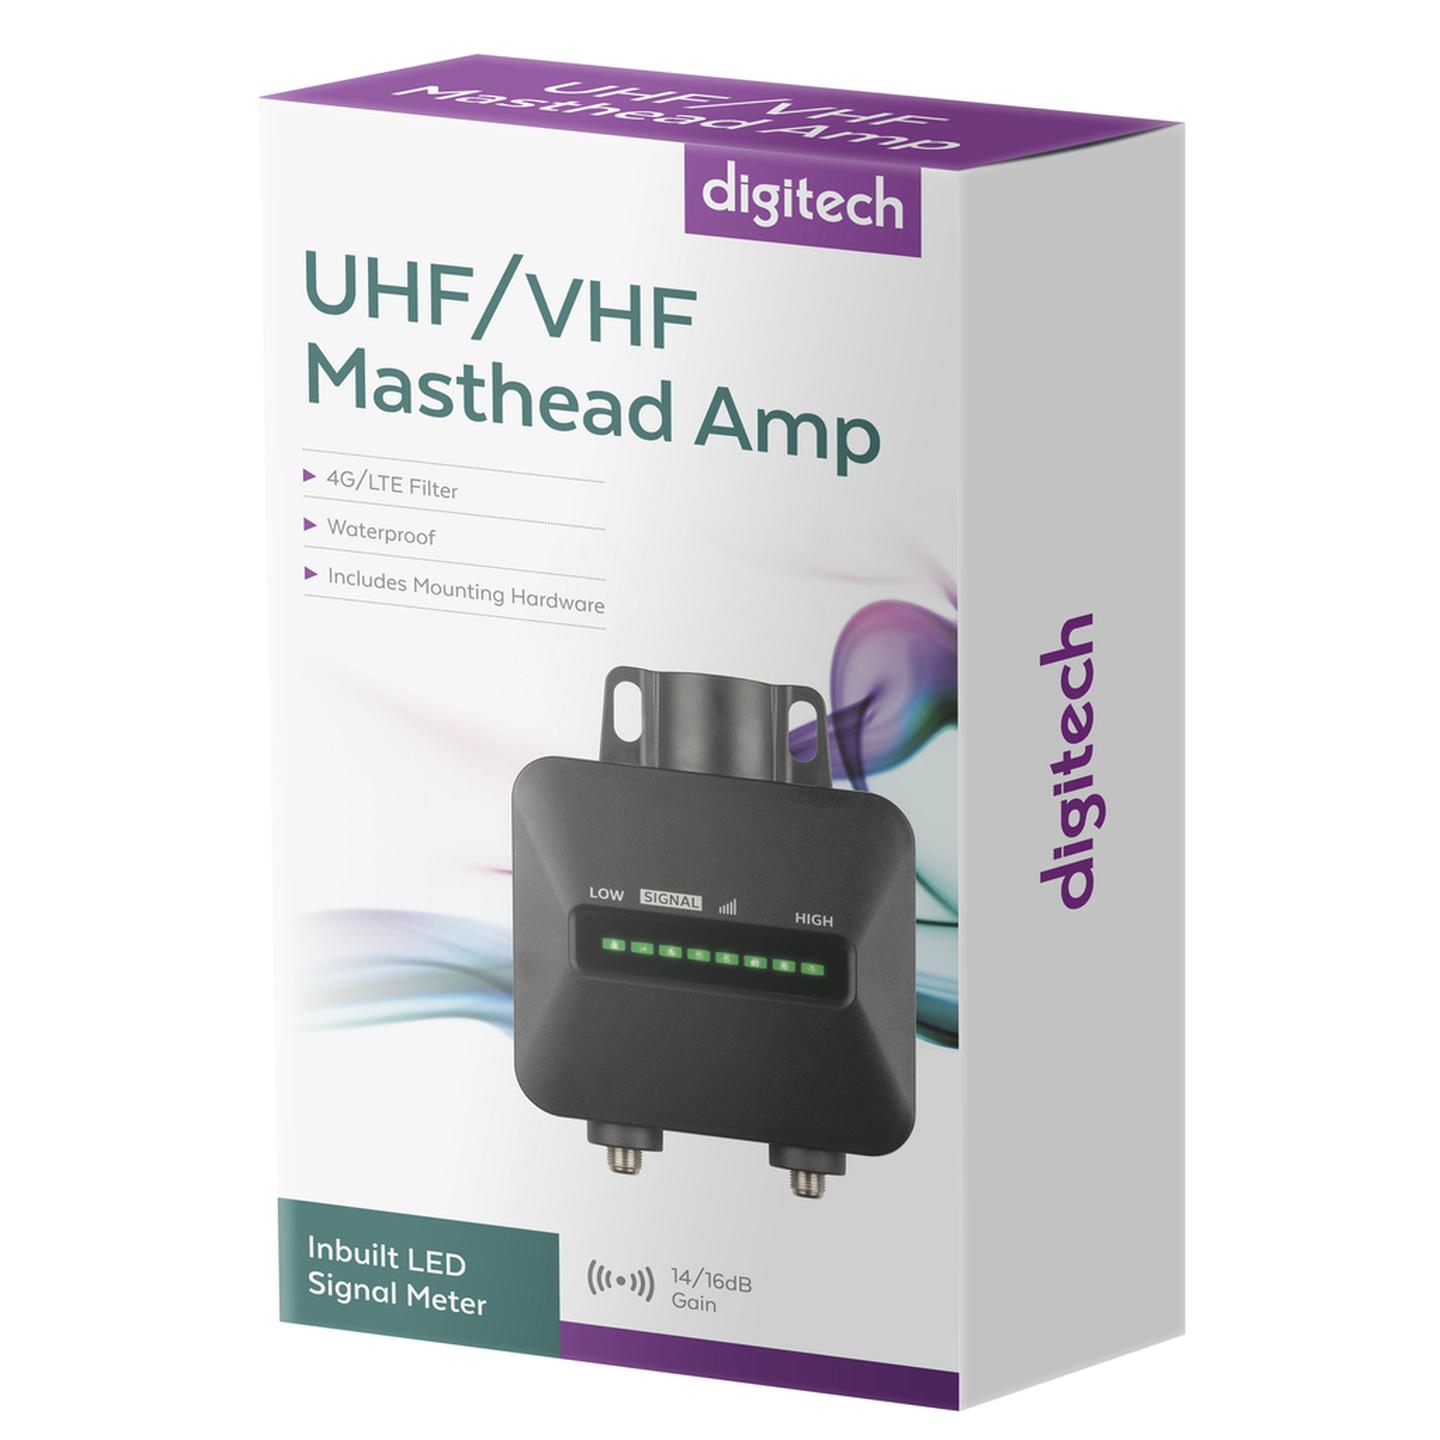 UHF/VHF Masthead Amp with Signal Meter